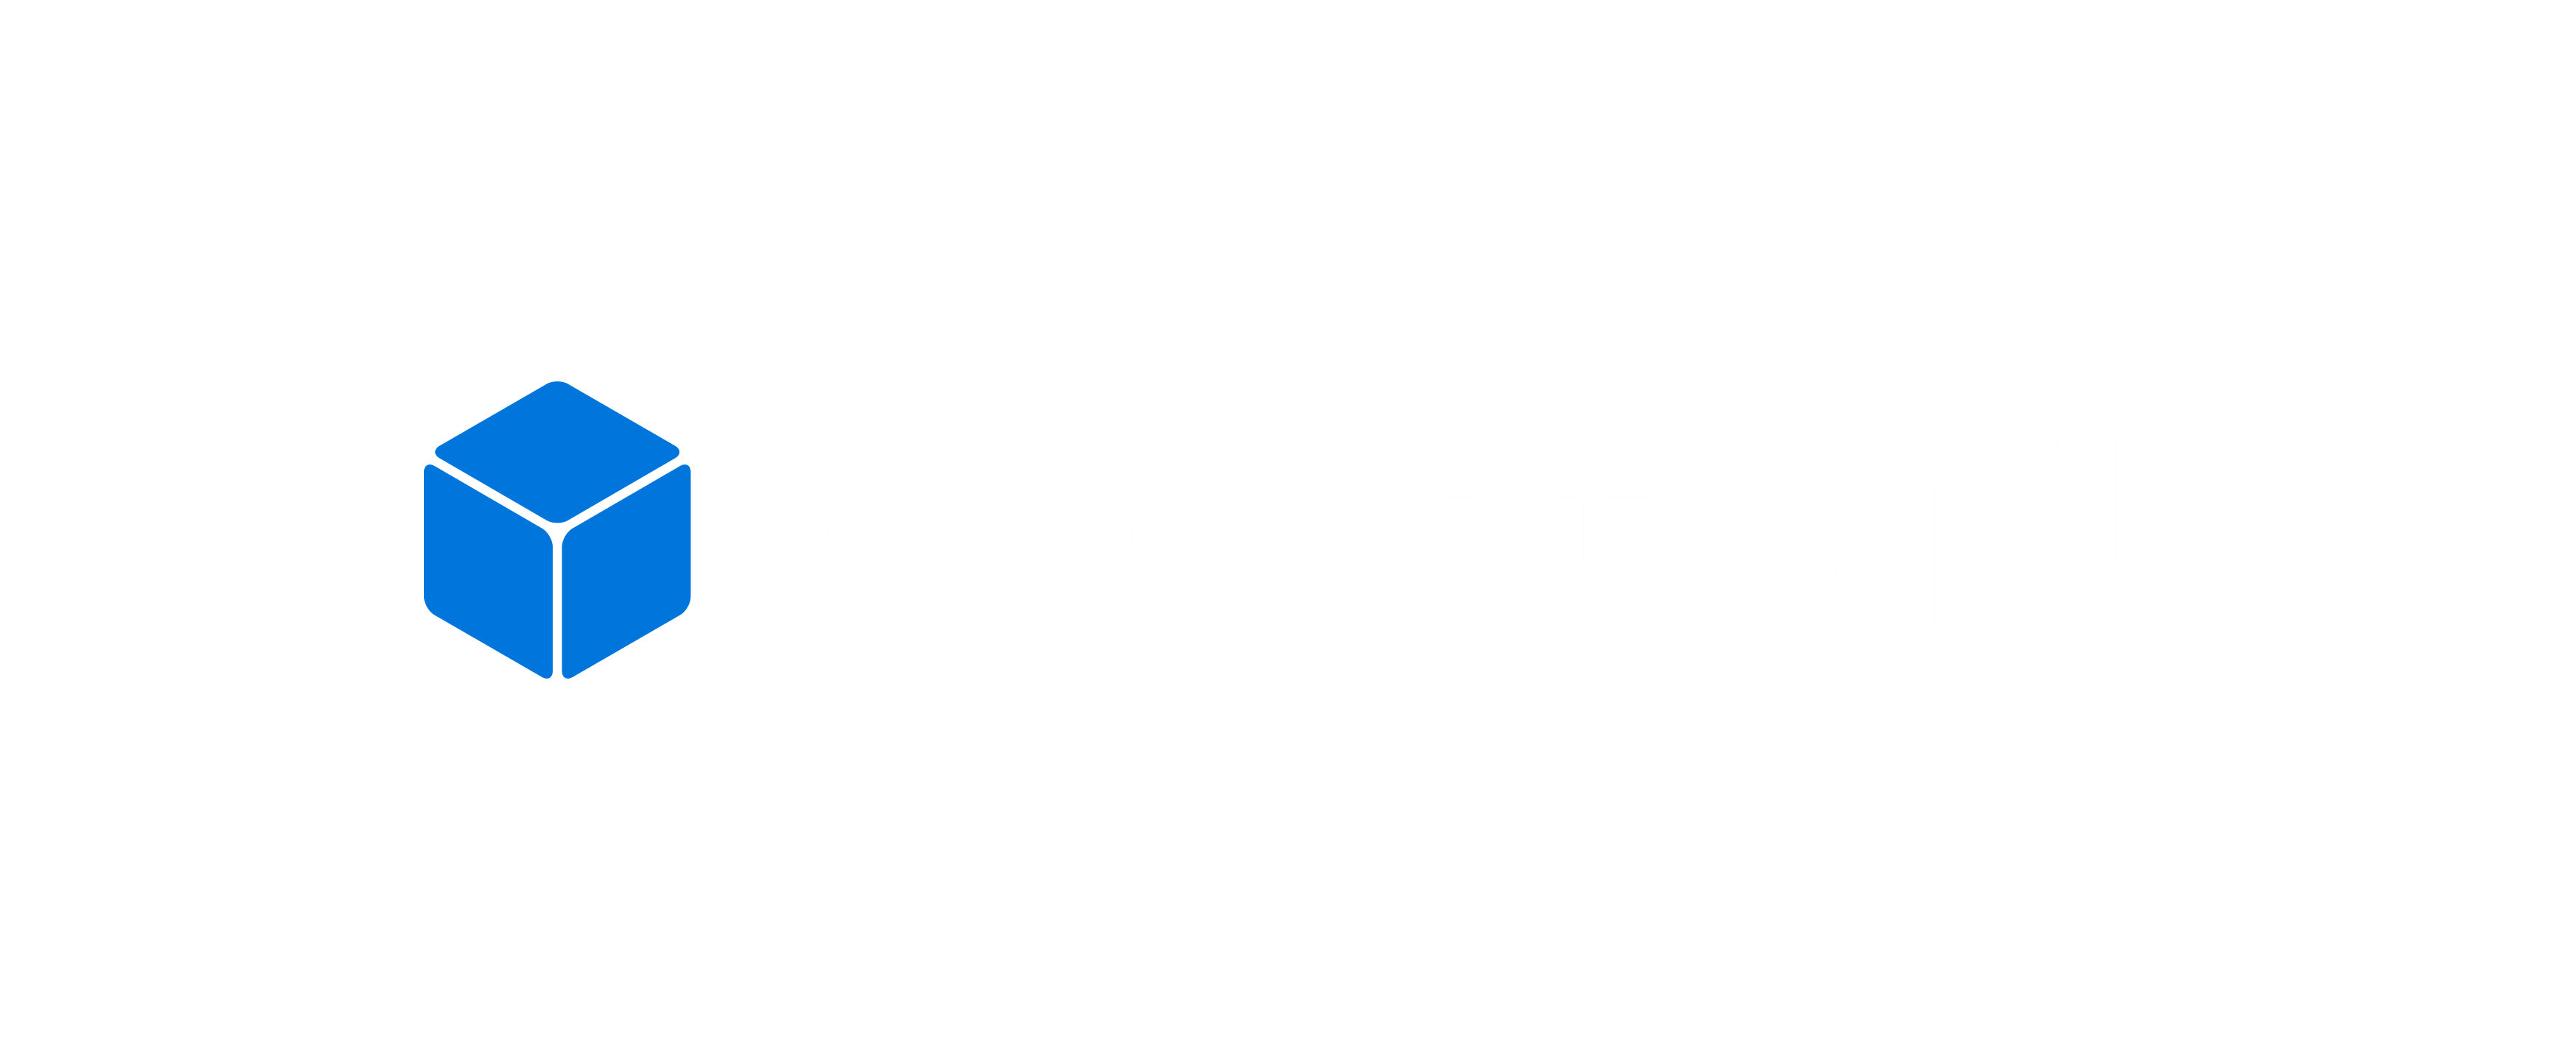 Status - CubeSite.pl